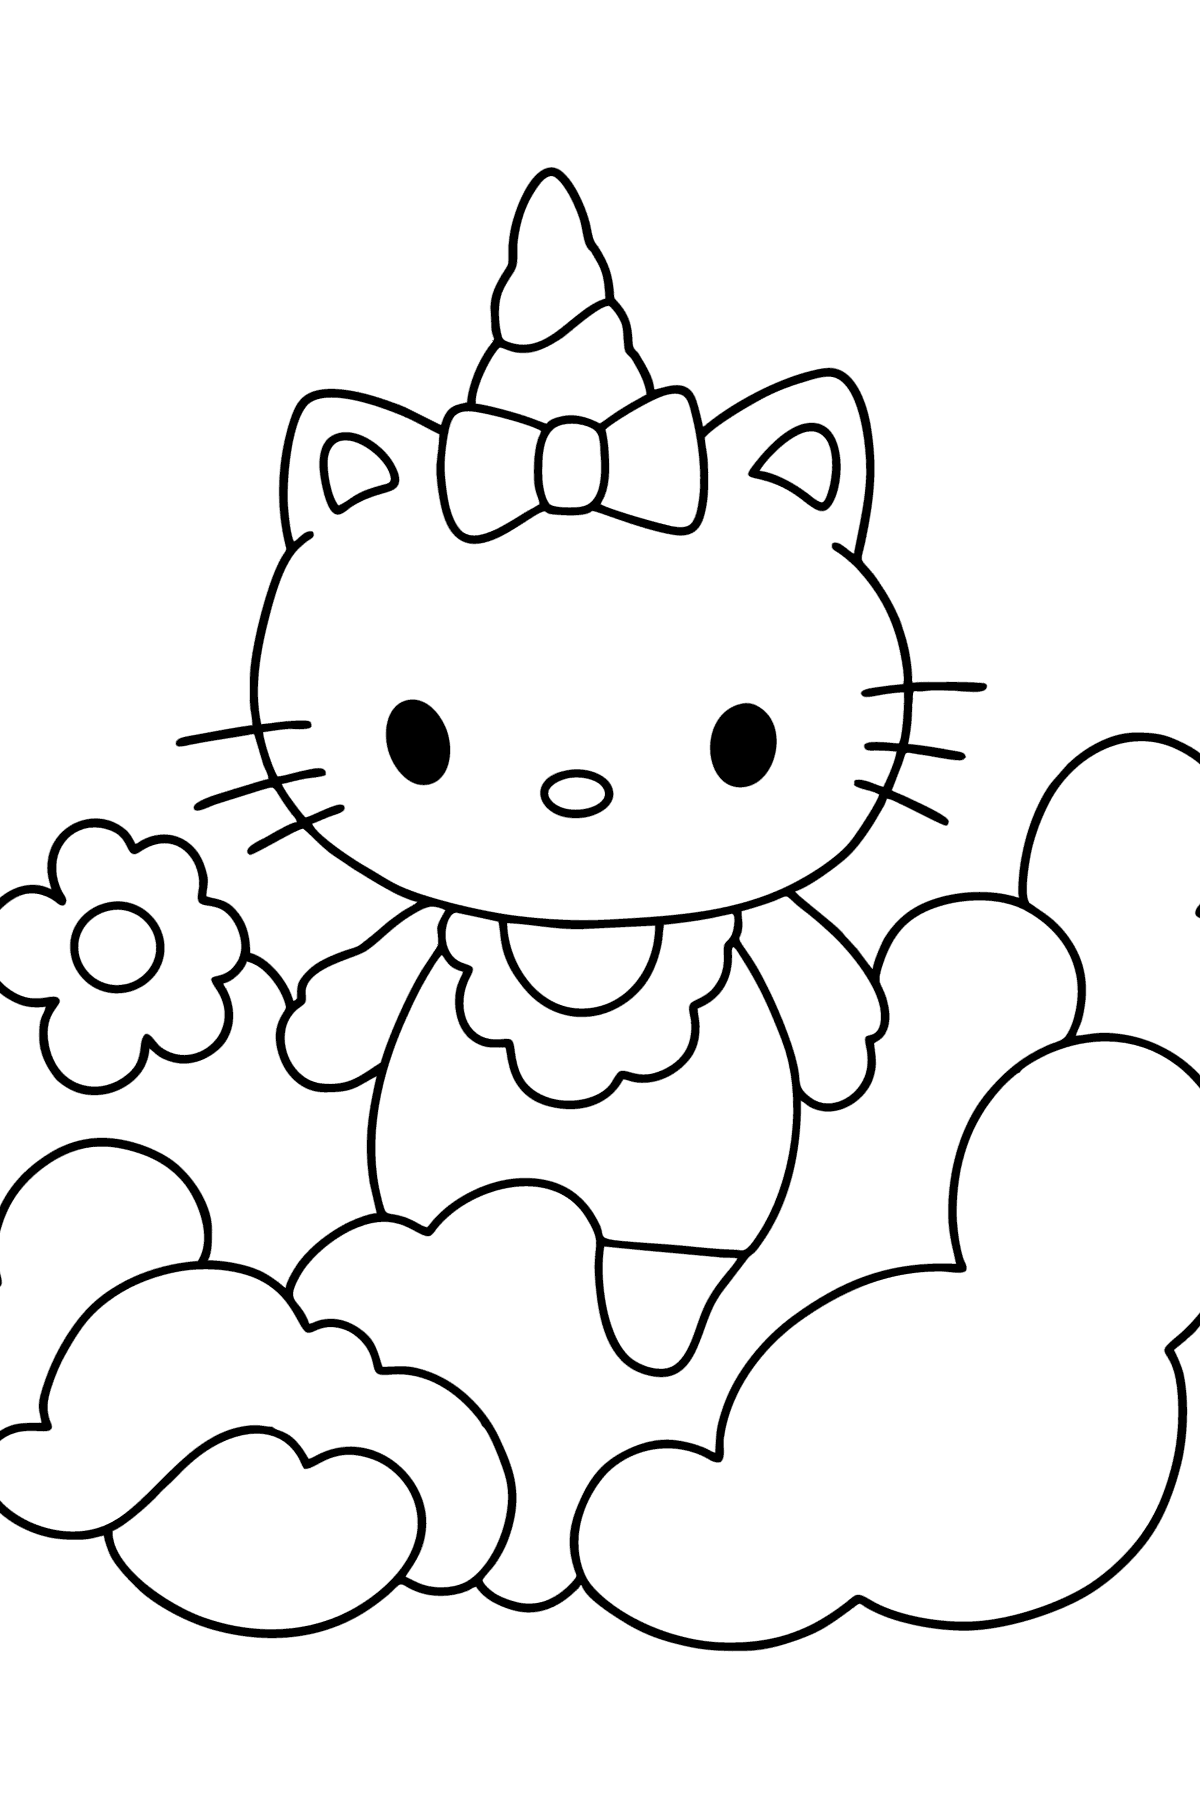 Ausmalbild Hello Kitty Einhorn - Malvorlagen für Kinder